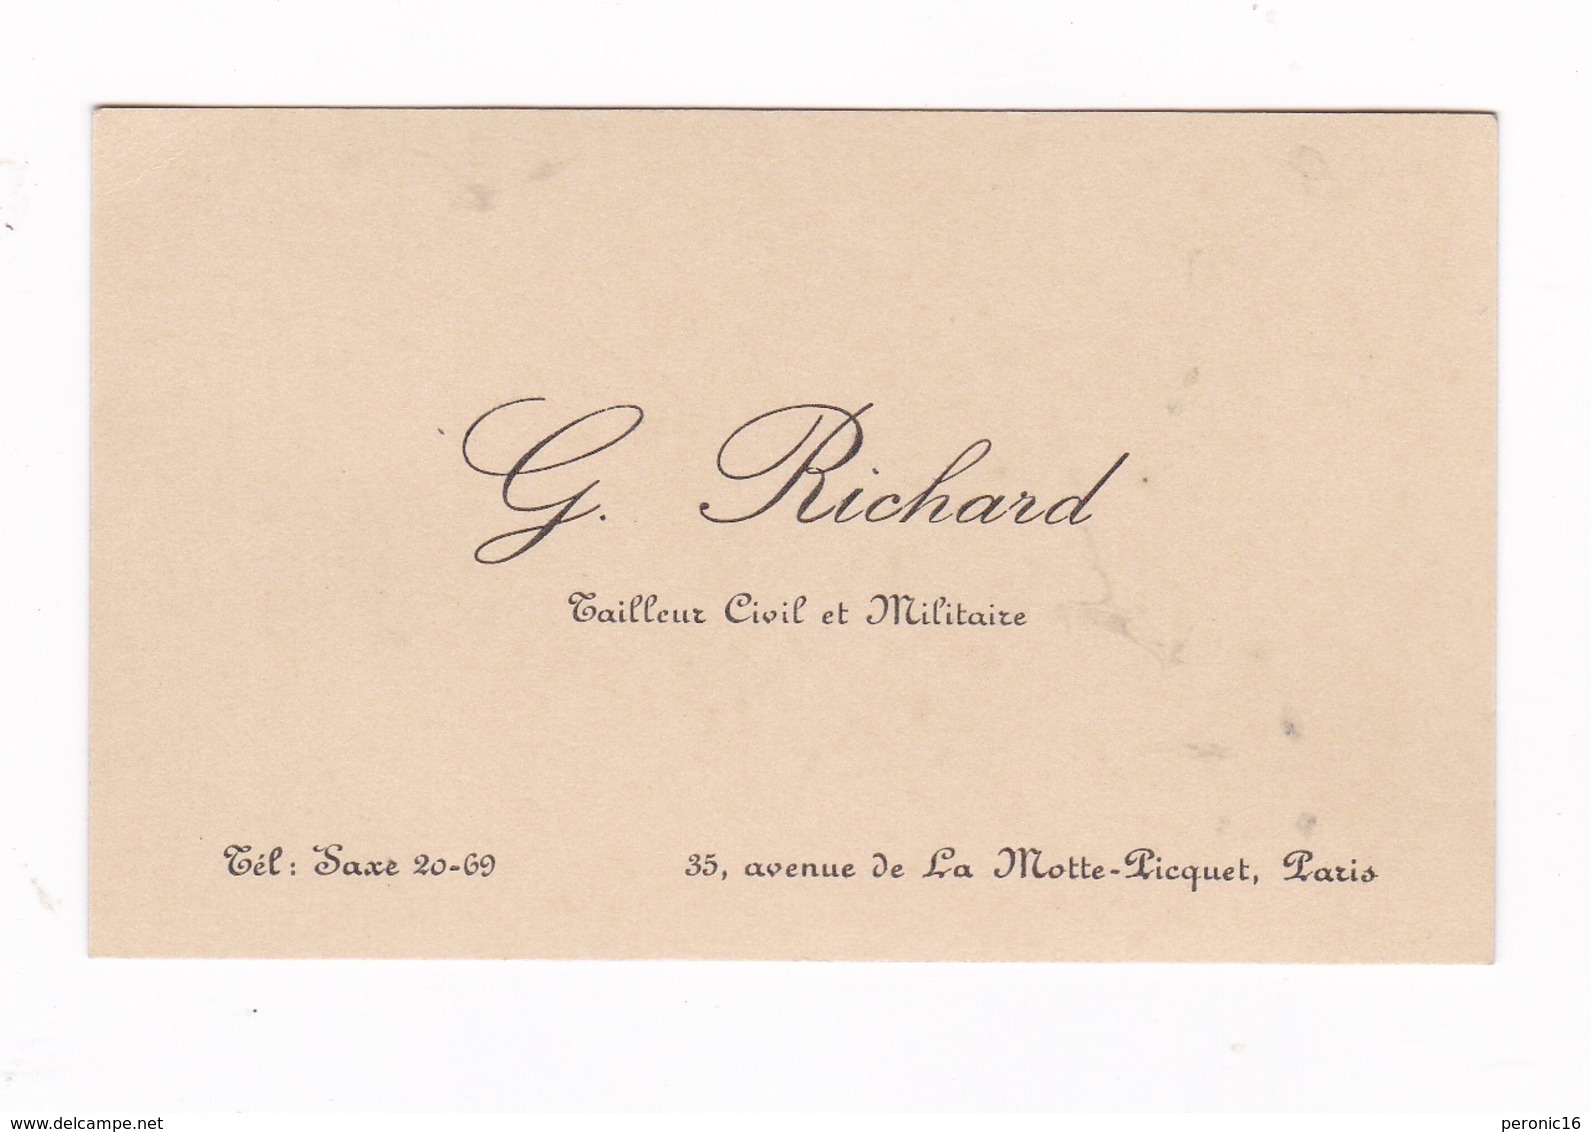 Carte Visite G. Richard, Tailleur Civil Et Militaire, 35 Av. De La Motte-Picquet, Paris - Equipement